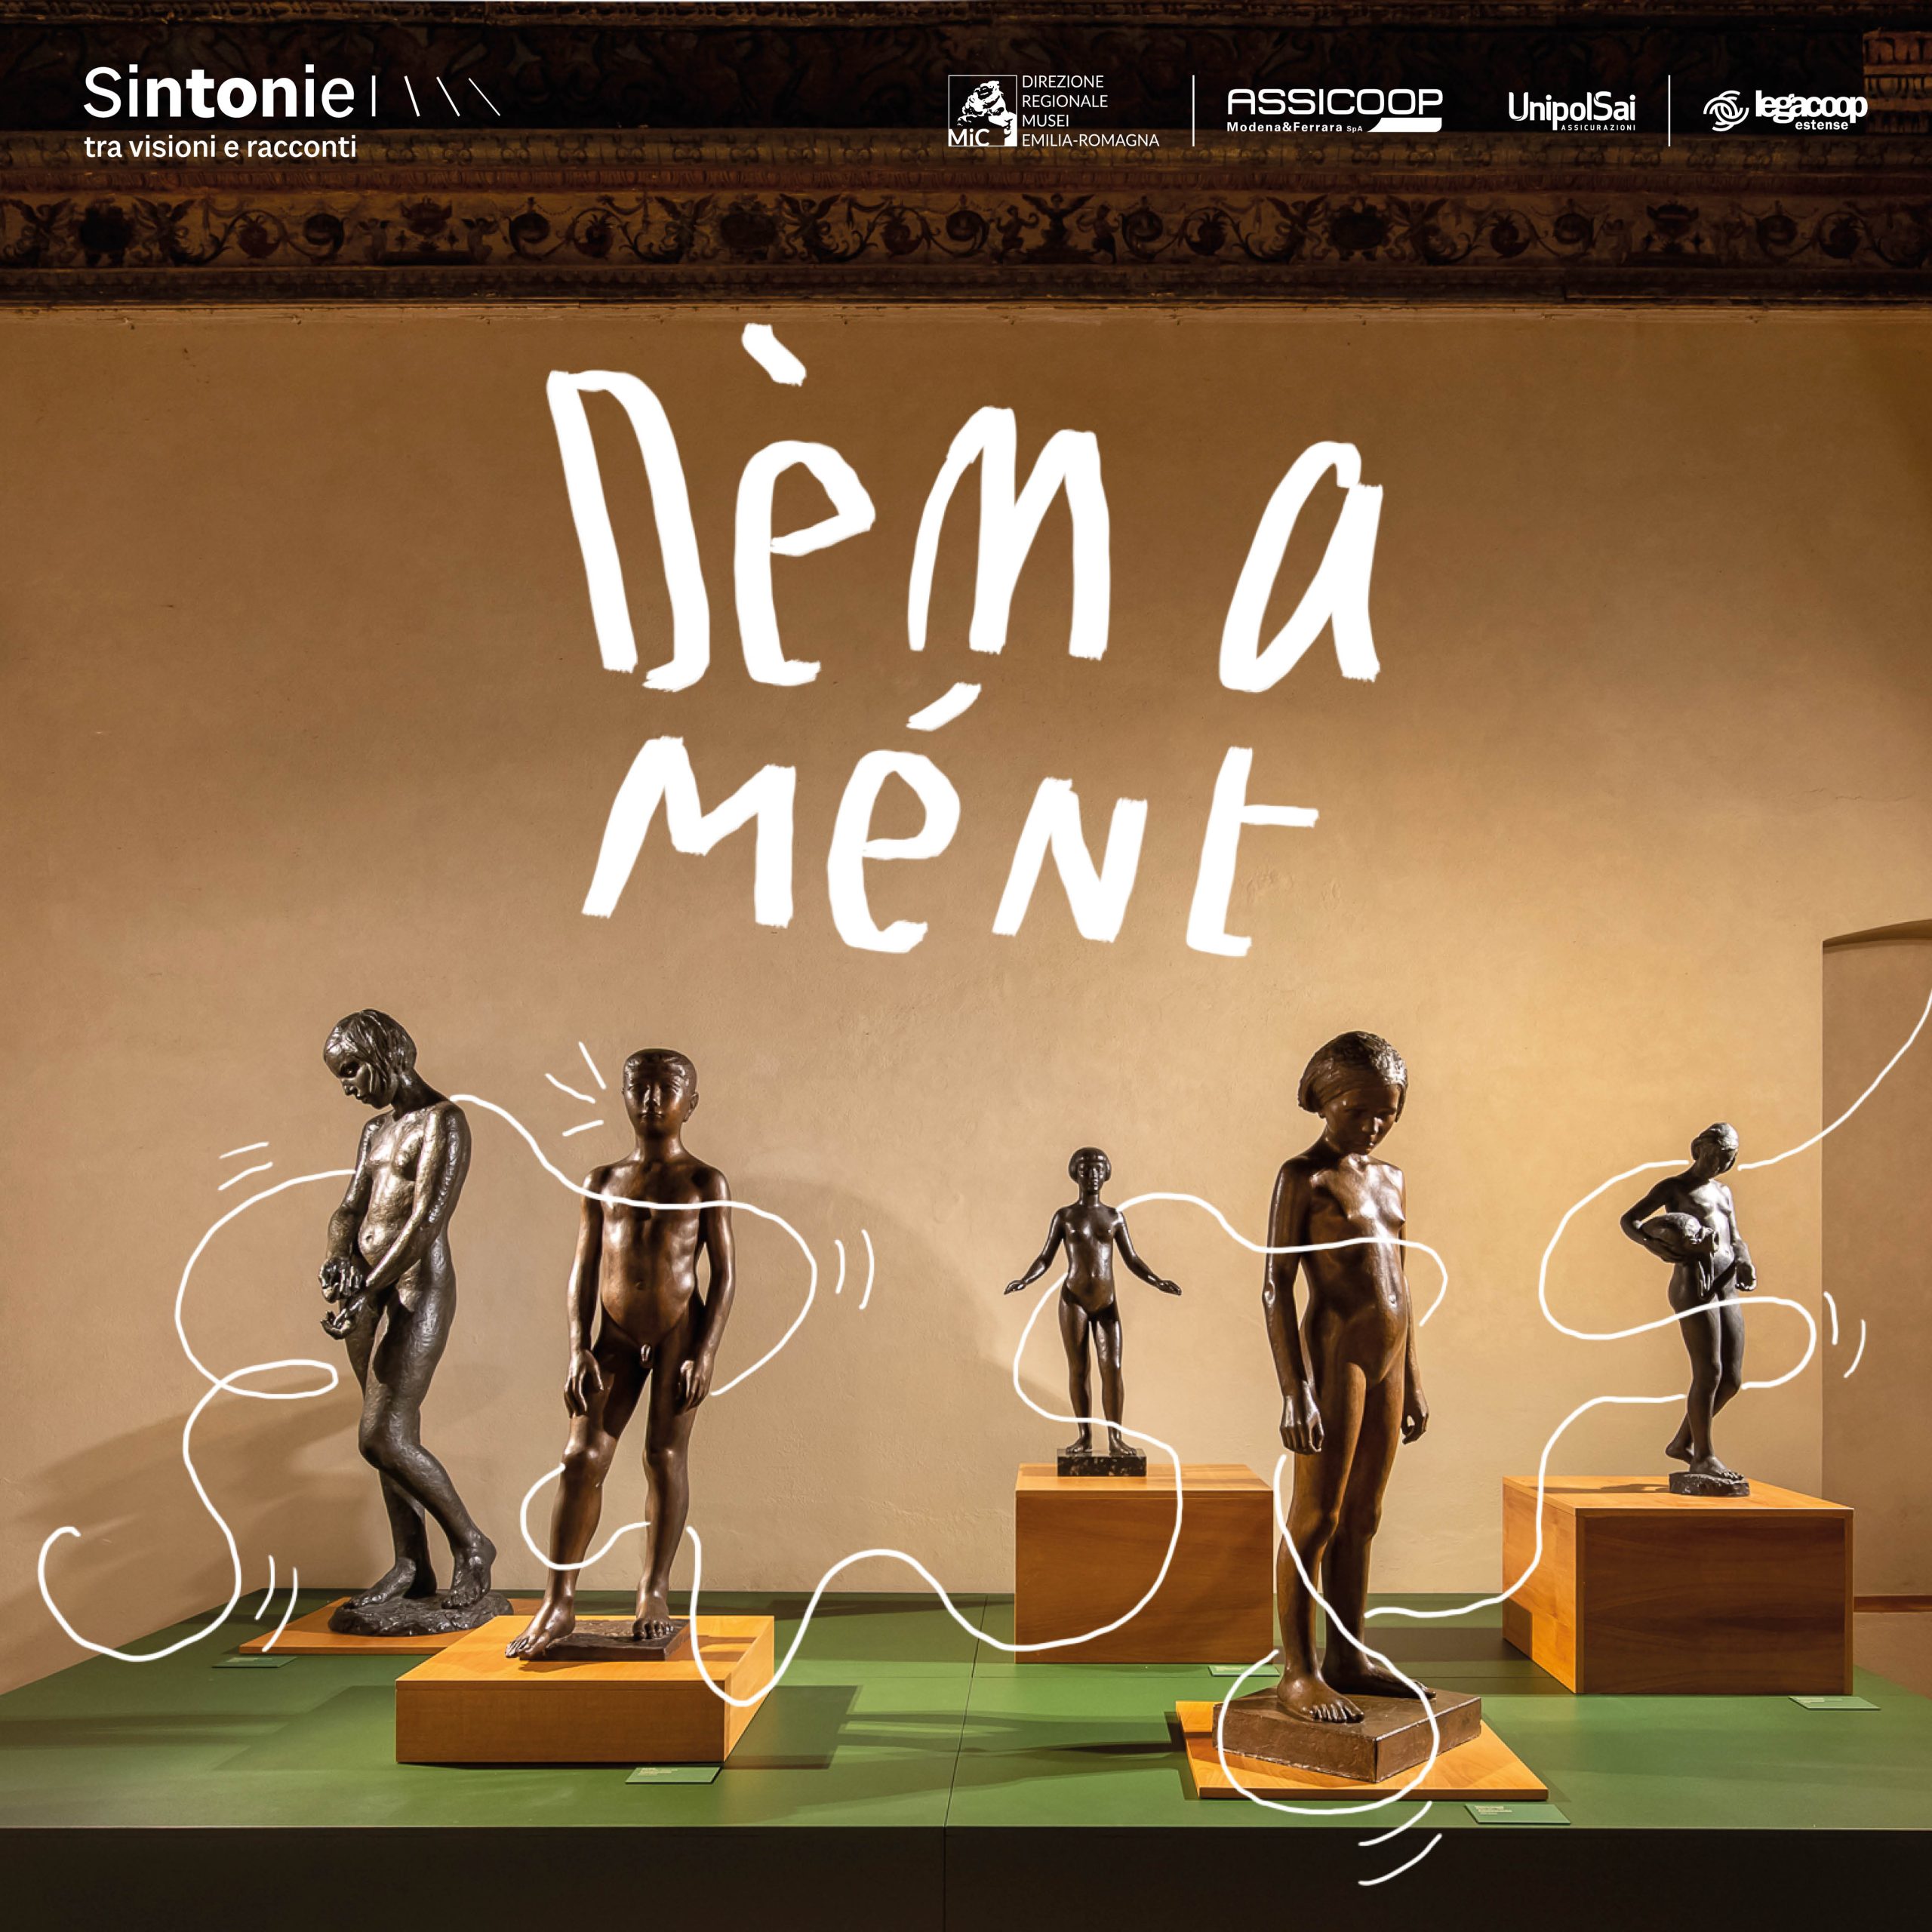 “Dèm a Mént”: inaugura il 31 marzo l’installazione sonora del progetto Sintonie